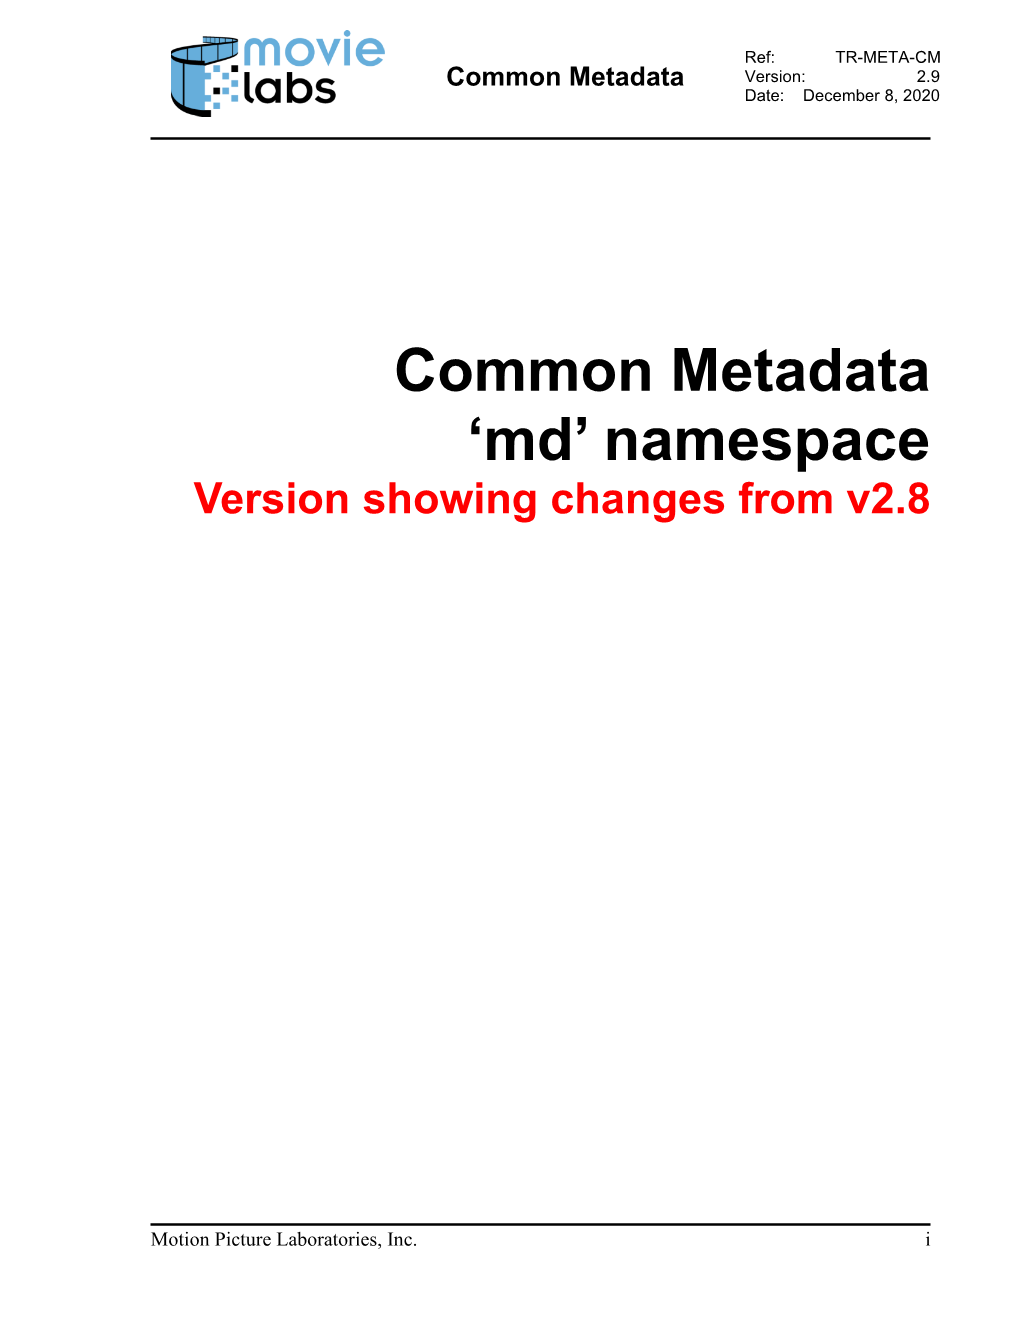 Common Metadata Version: 2.9 Date: December 8, 2020